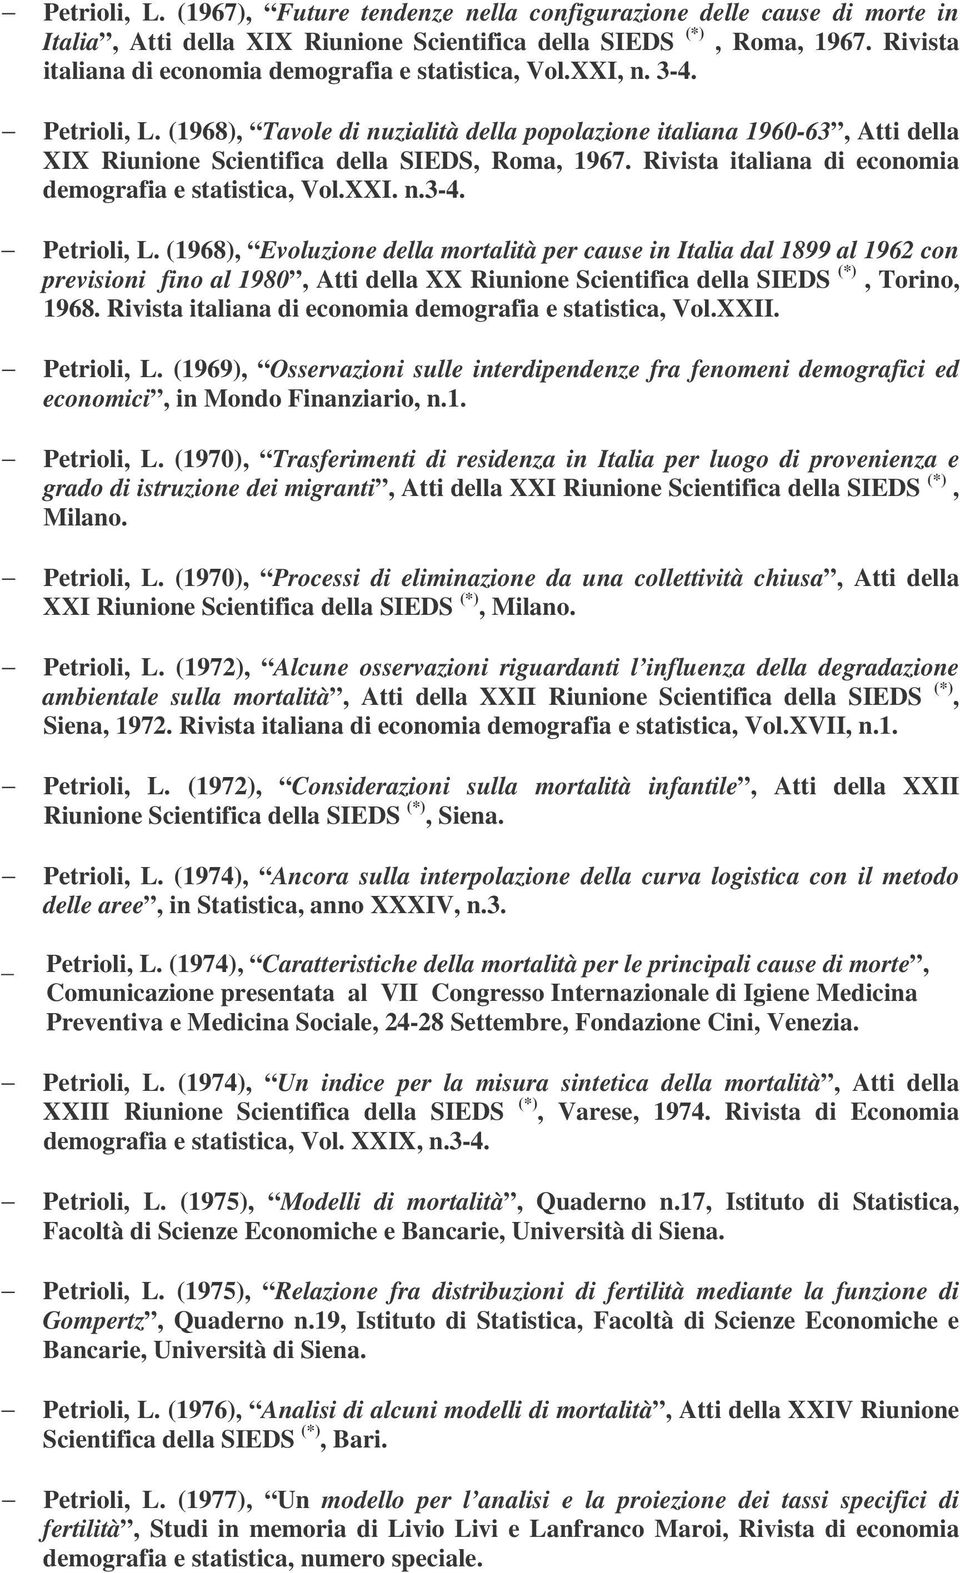 (1968), Tavole di nuzialità della popolazione italiana 1960-63, Atti della XIX Riunione Scientifica della SIEDS, Roma, 1967. Rivista italiana di economia demografia e statistica, Vol.XXI. n.3-4.